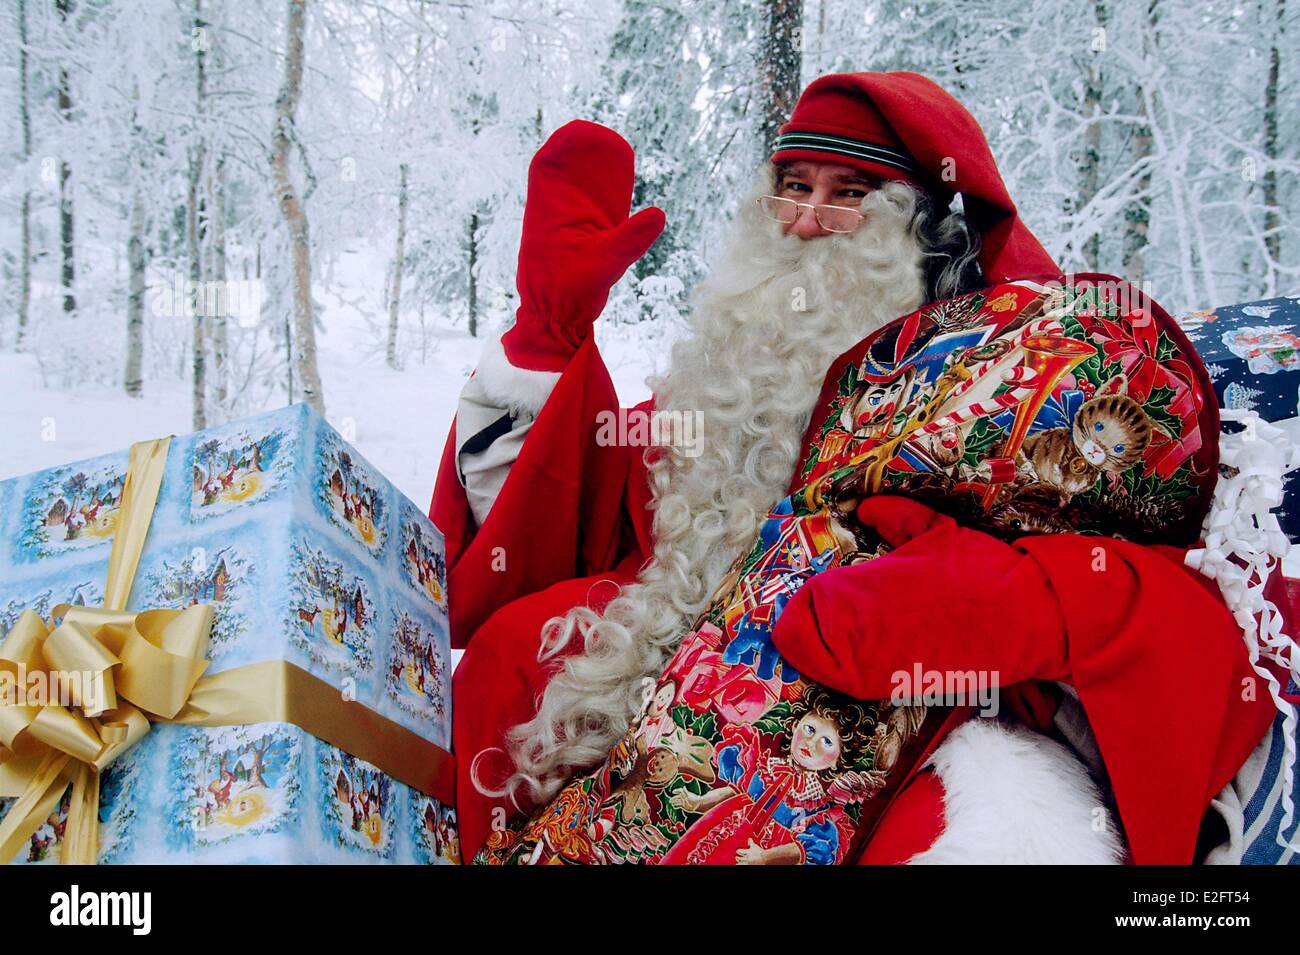 Finlande Laponie Rovaniemi Santa Claus' village Santa Claus Noël chargé-box et l'accueil Banque D'Images